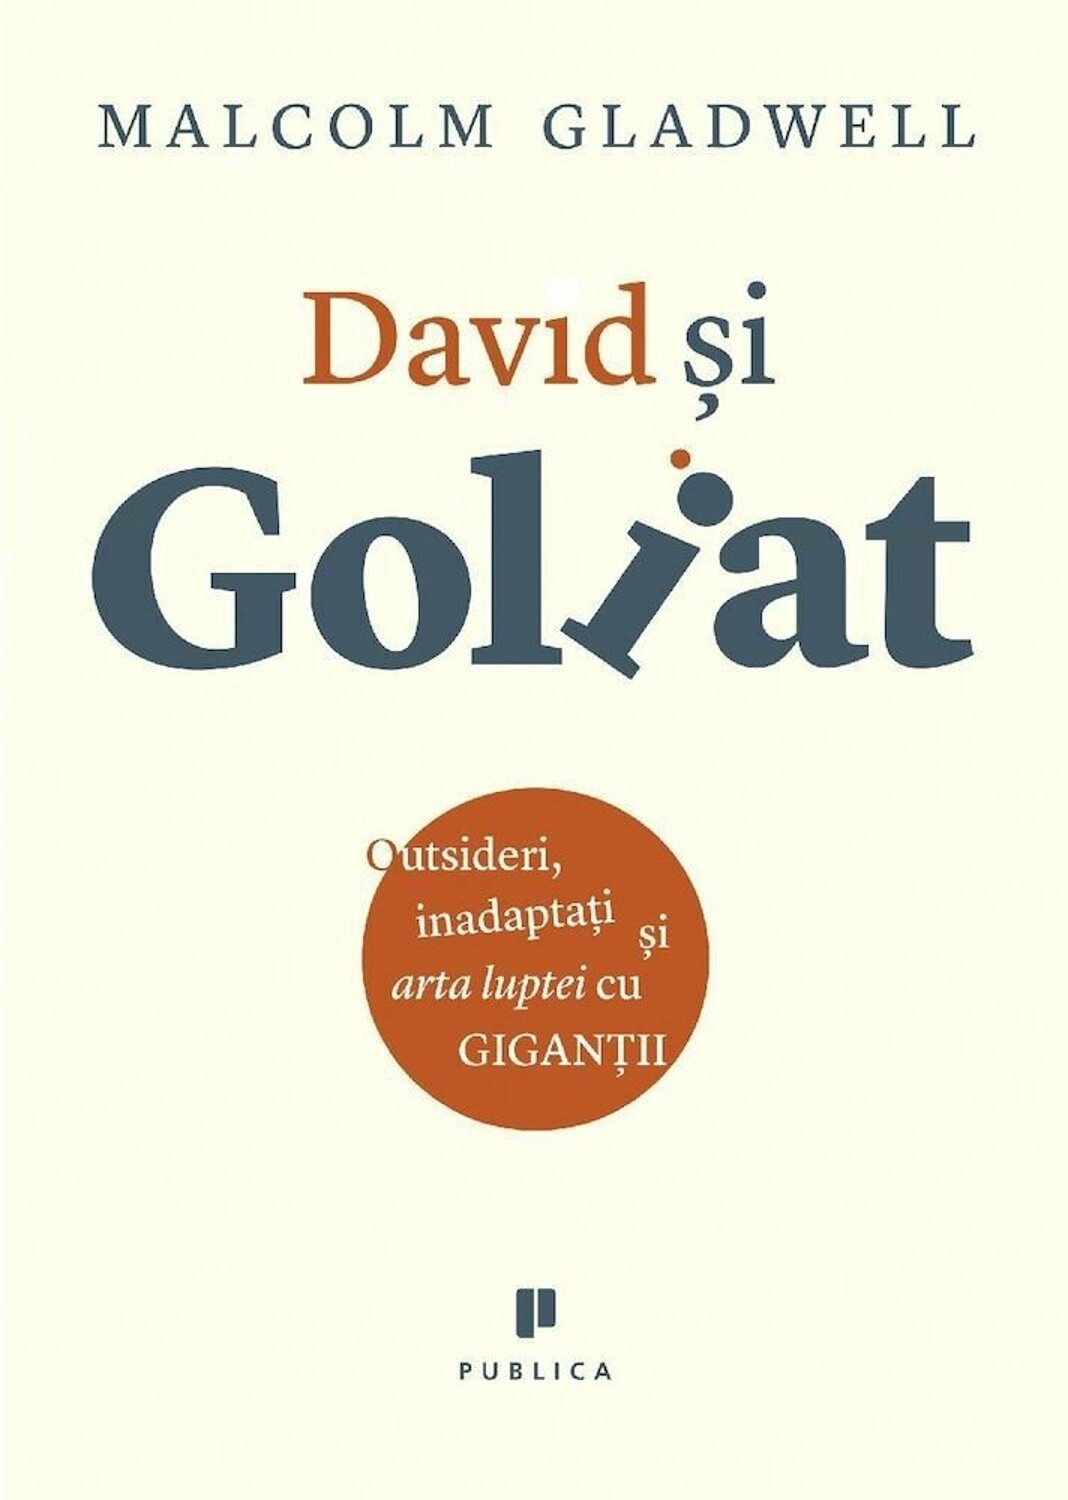 David si Goliat | Malcolm Gladwell carturesti.ro poza noua